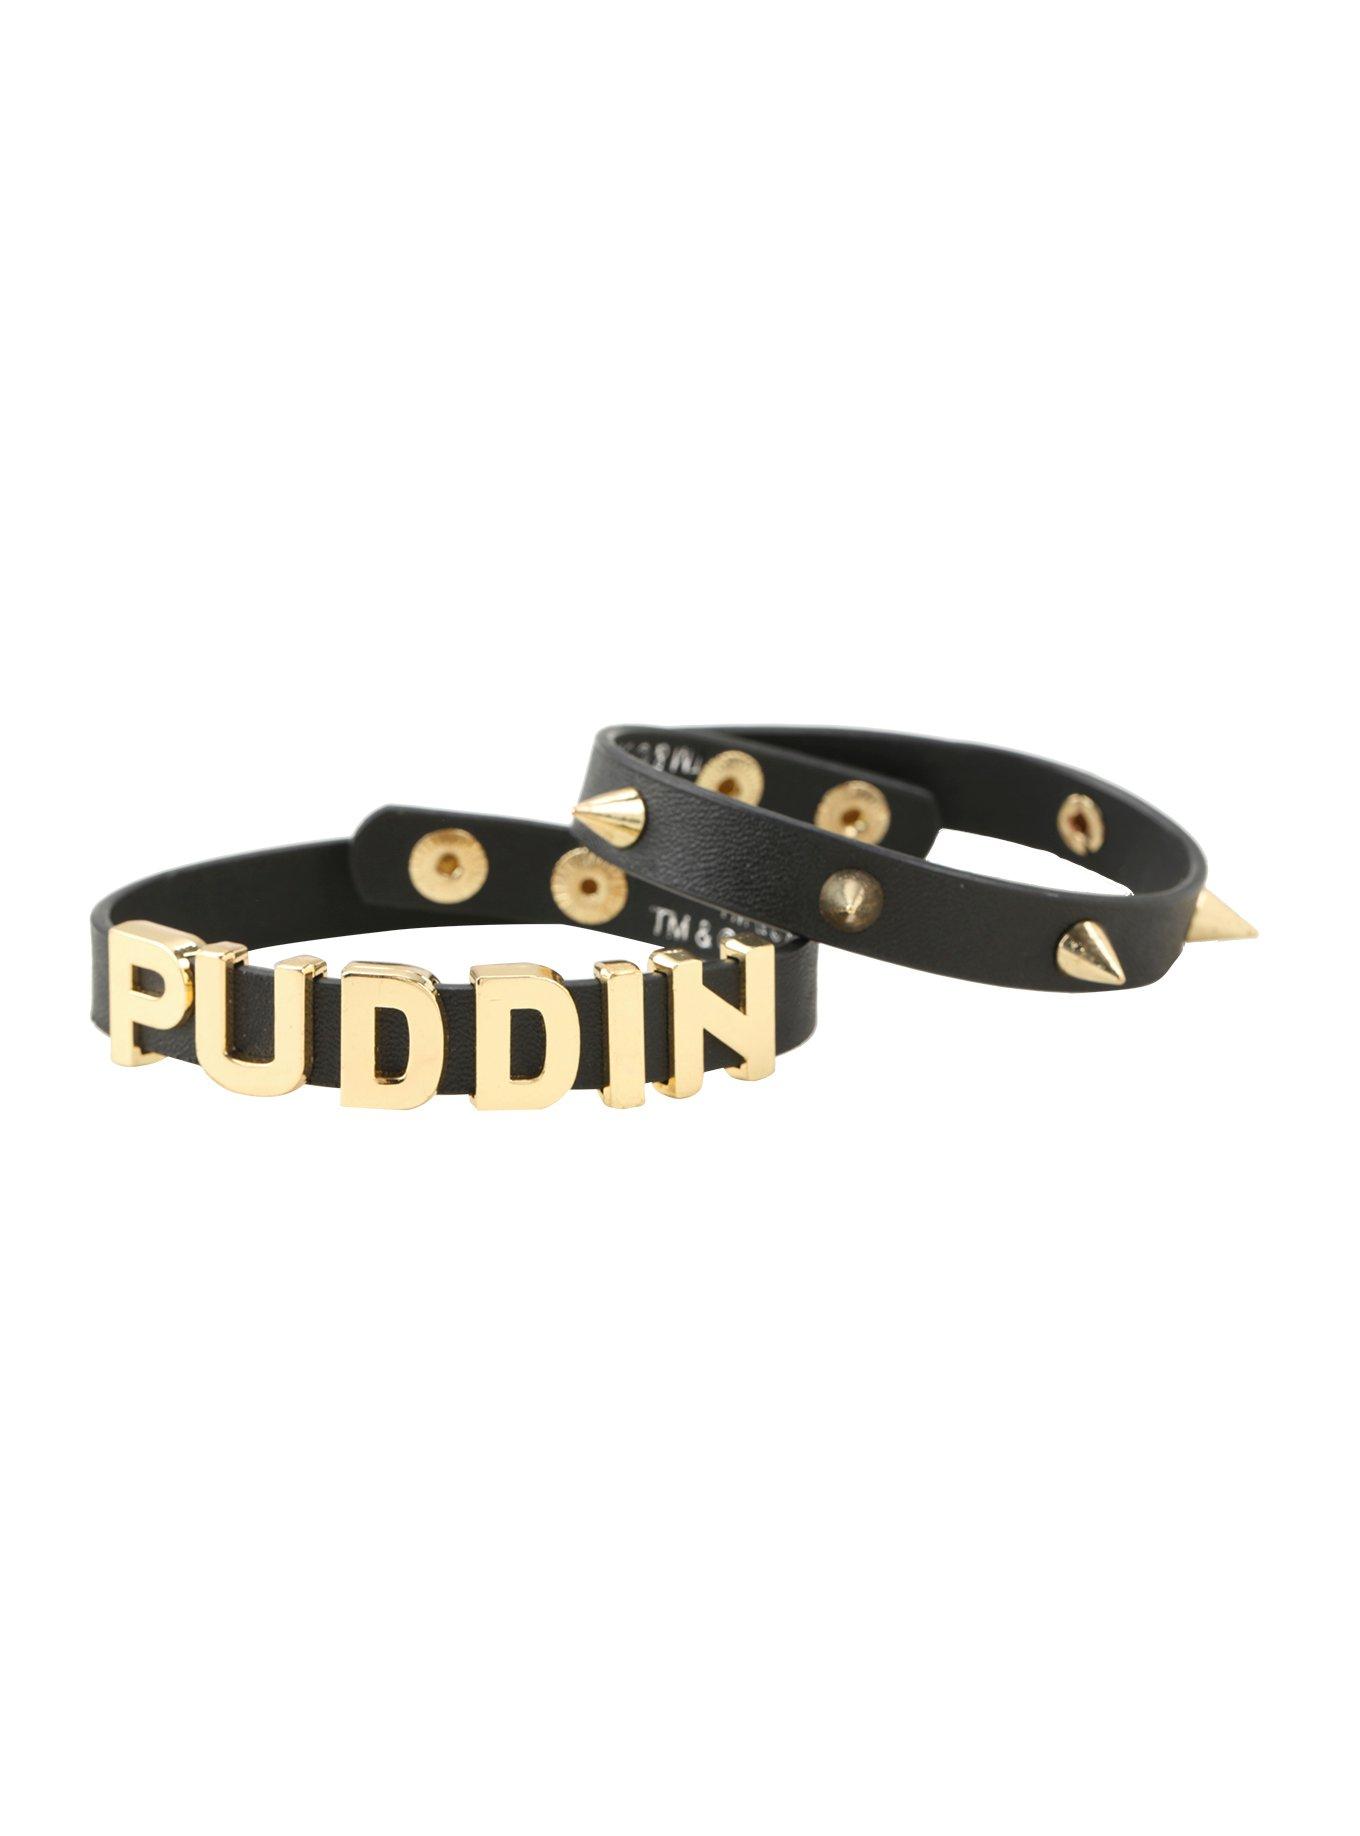 DC Comics Suicide Squad PUDDIN Cuff Bracelet Set, , hi-res